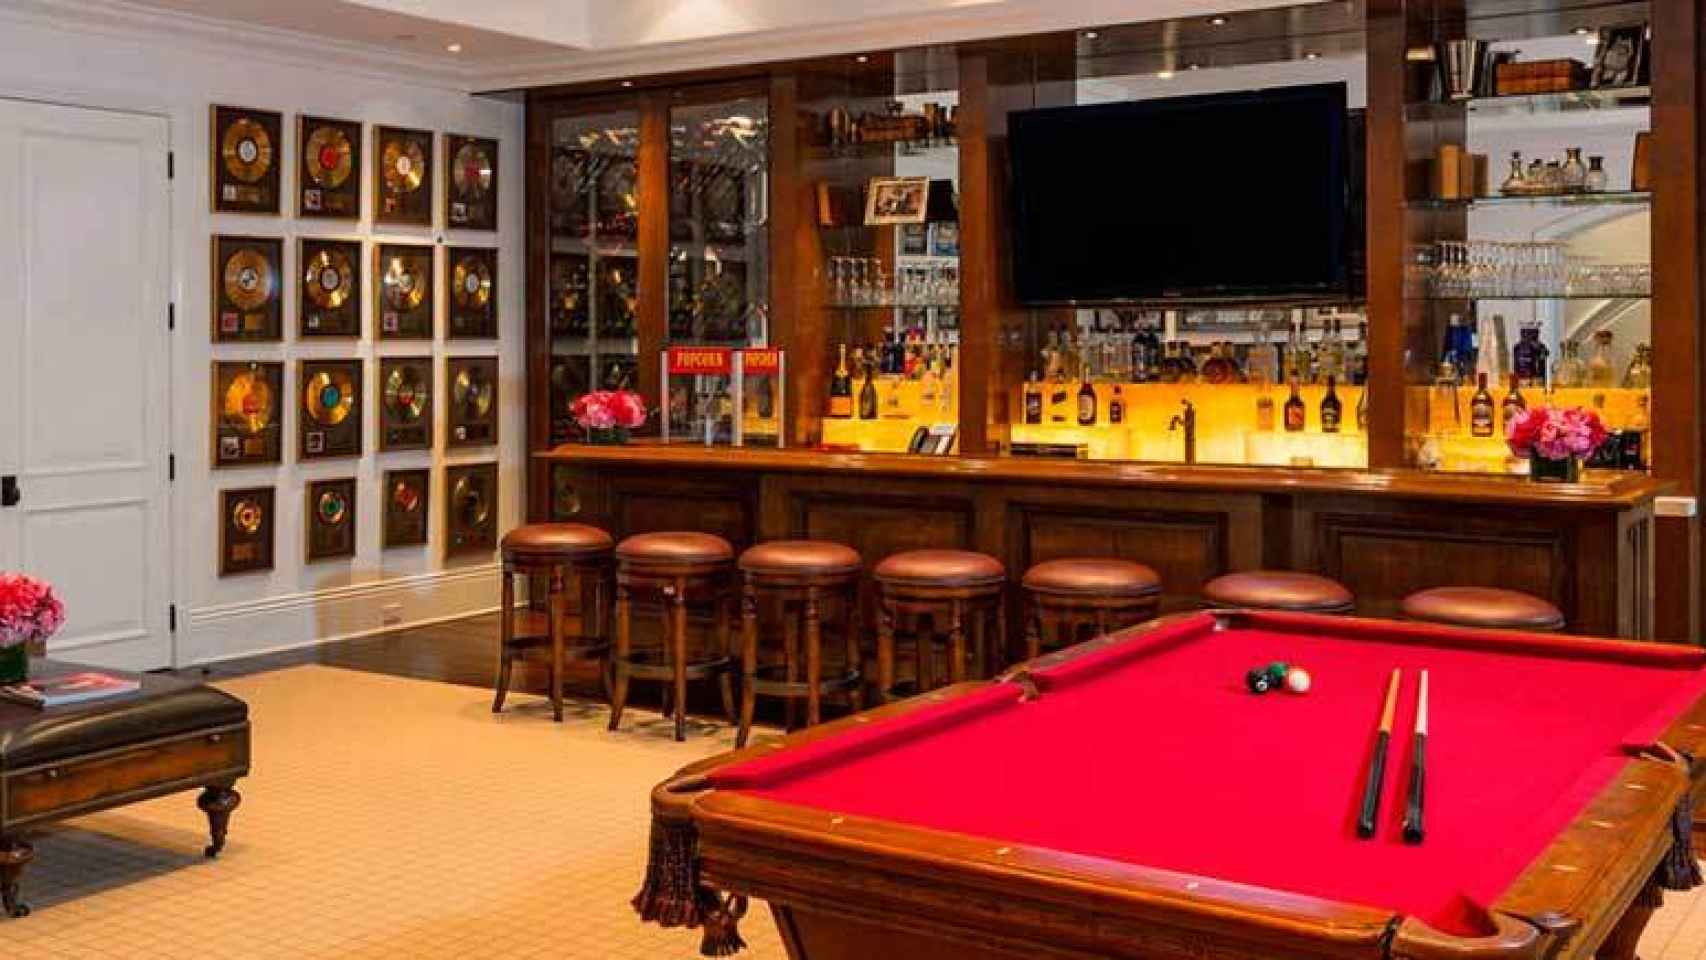 Zona de bar y sala de juegos situada en el sótano.